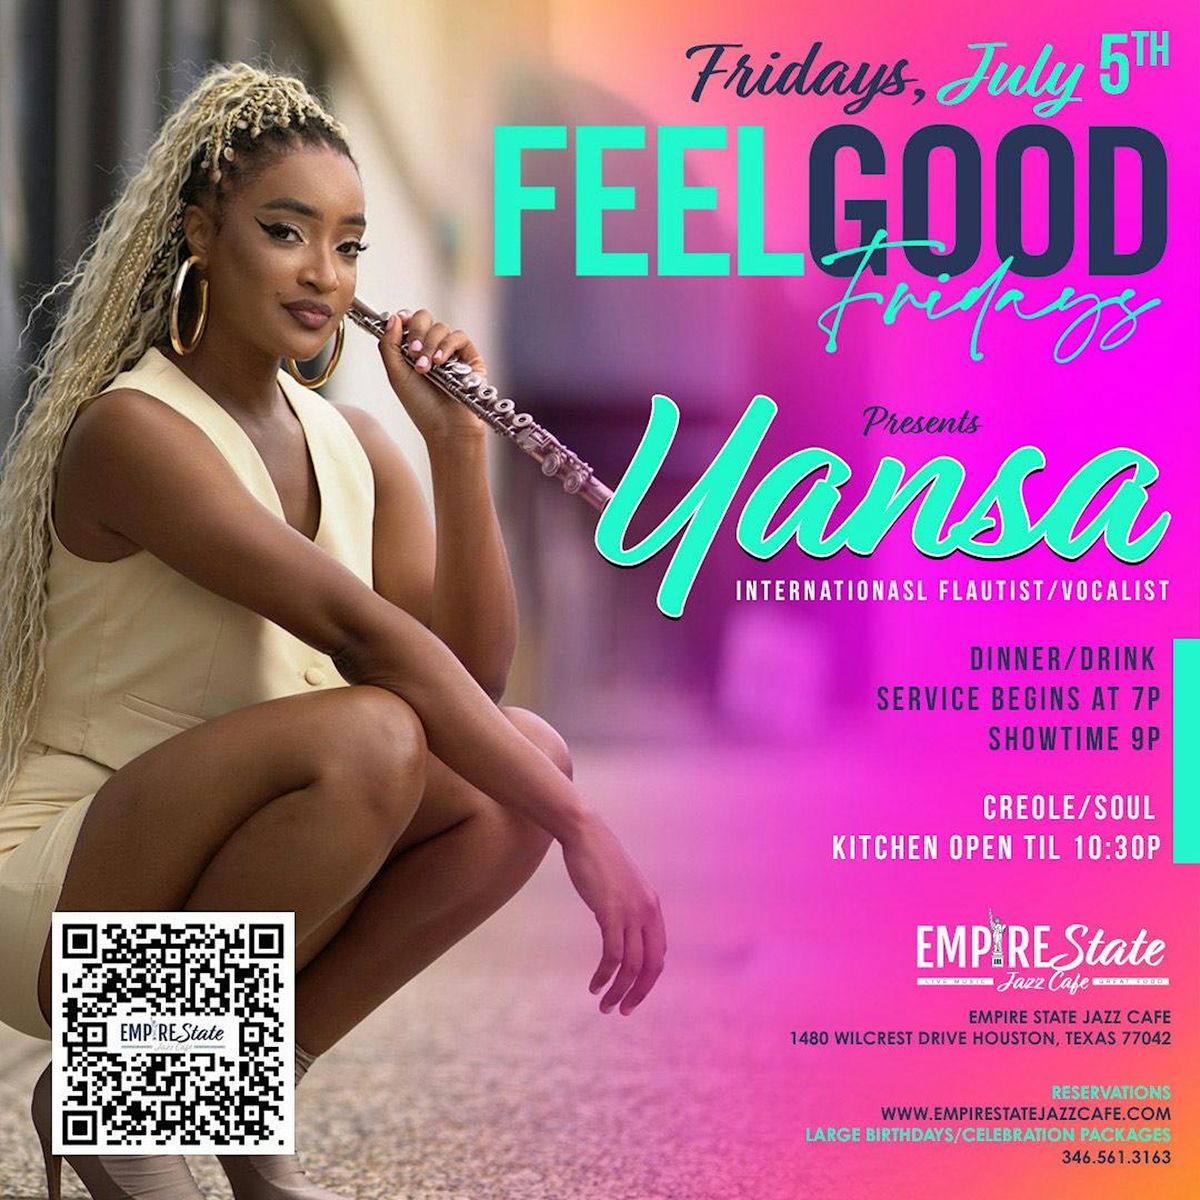 7\/5  - Feel Good Fridays with Yansa